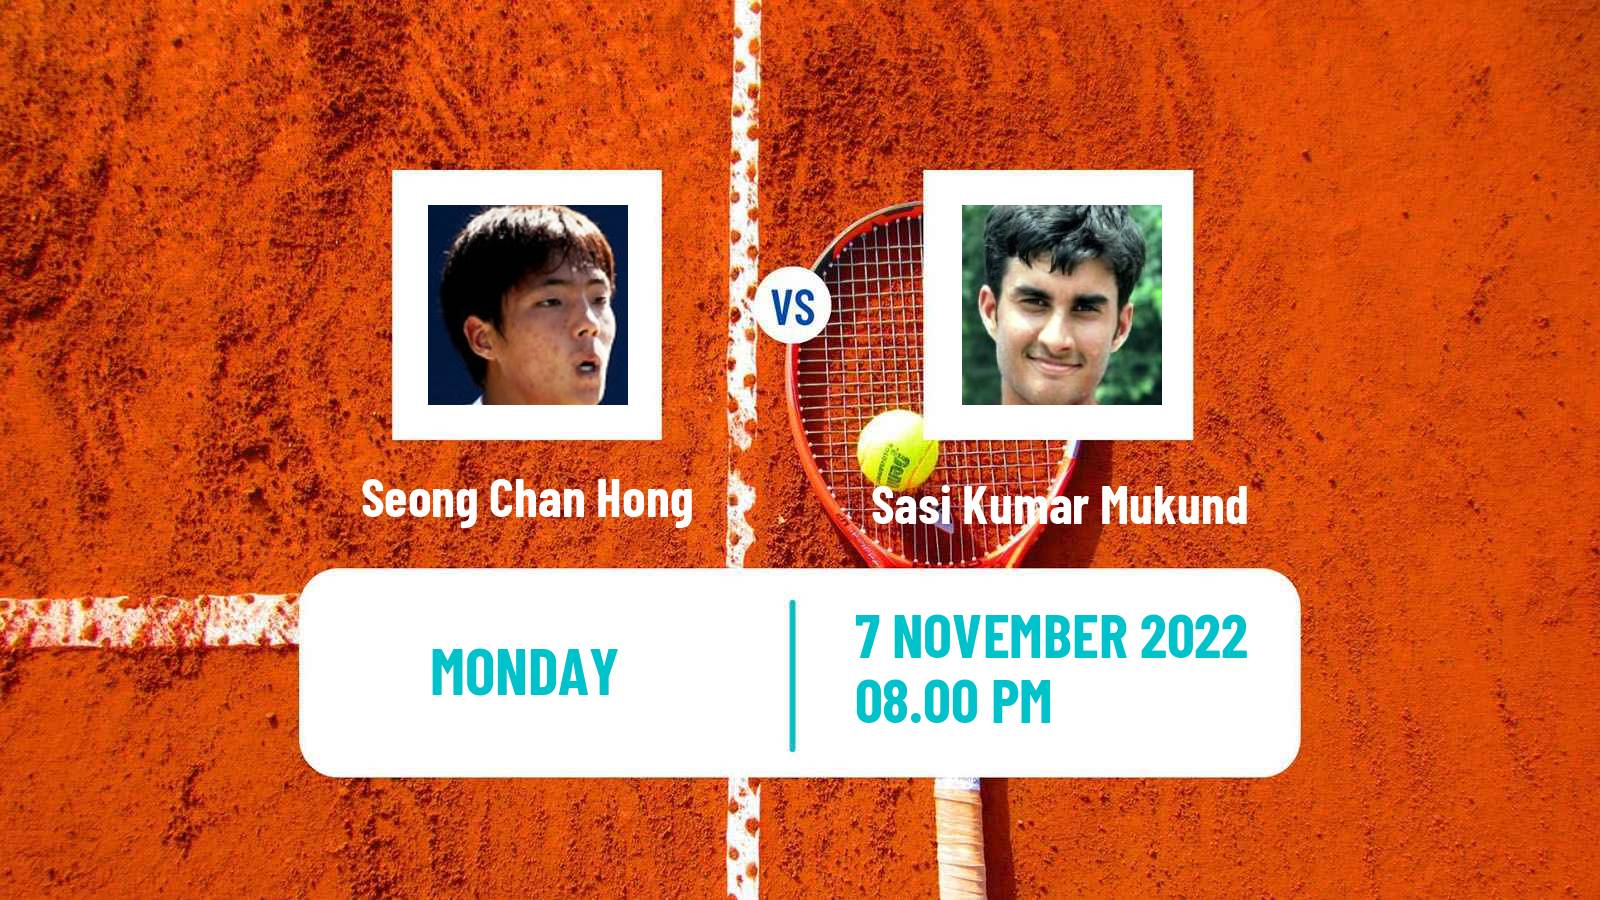 Tennis ATP Challenger Seong Chan Hong - Mukund Sasikumar